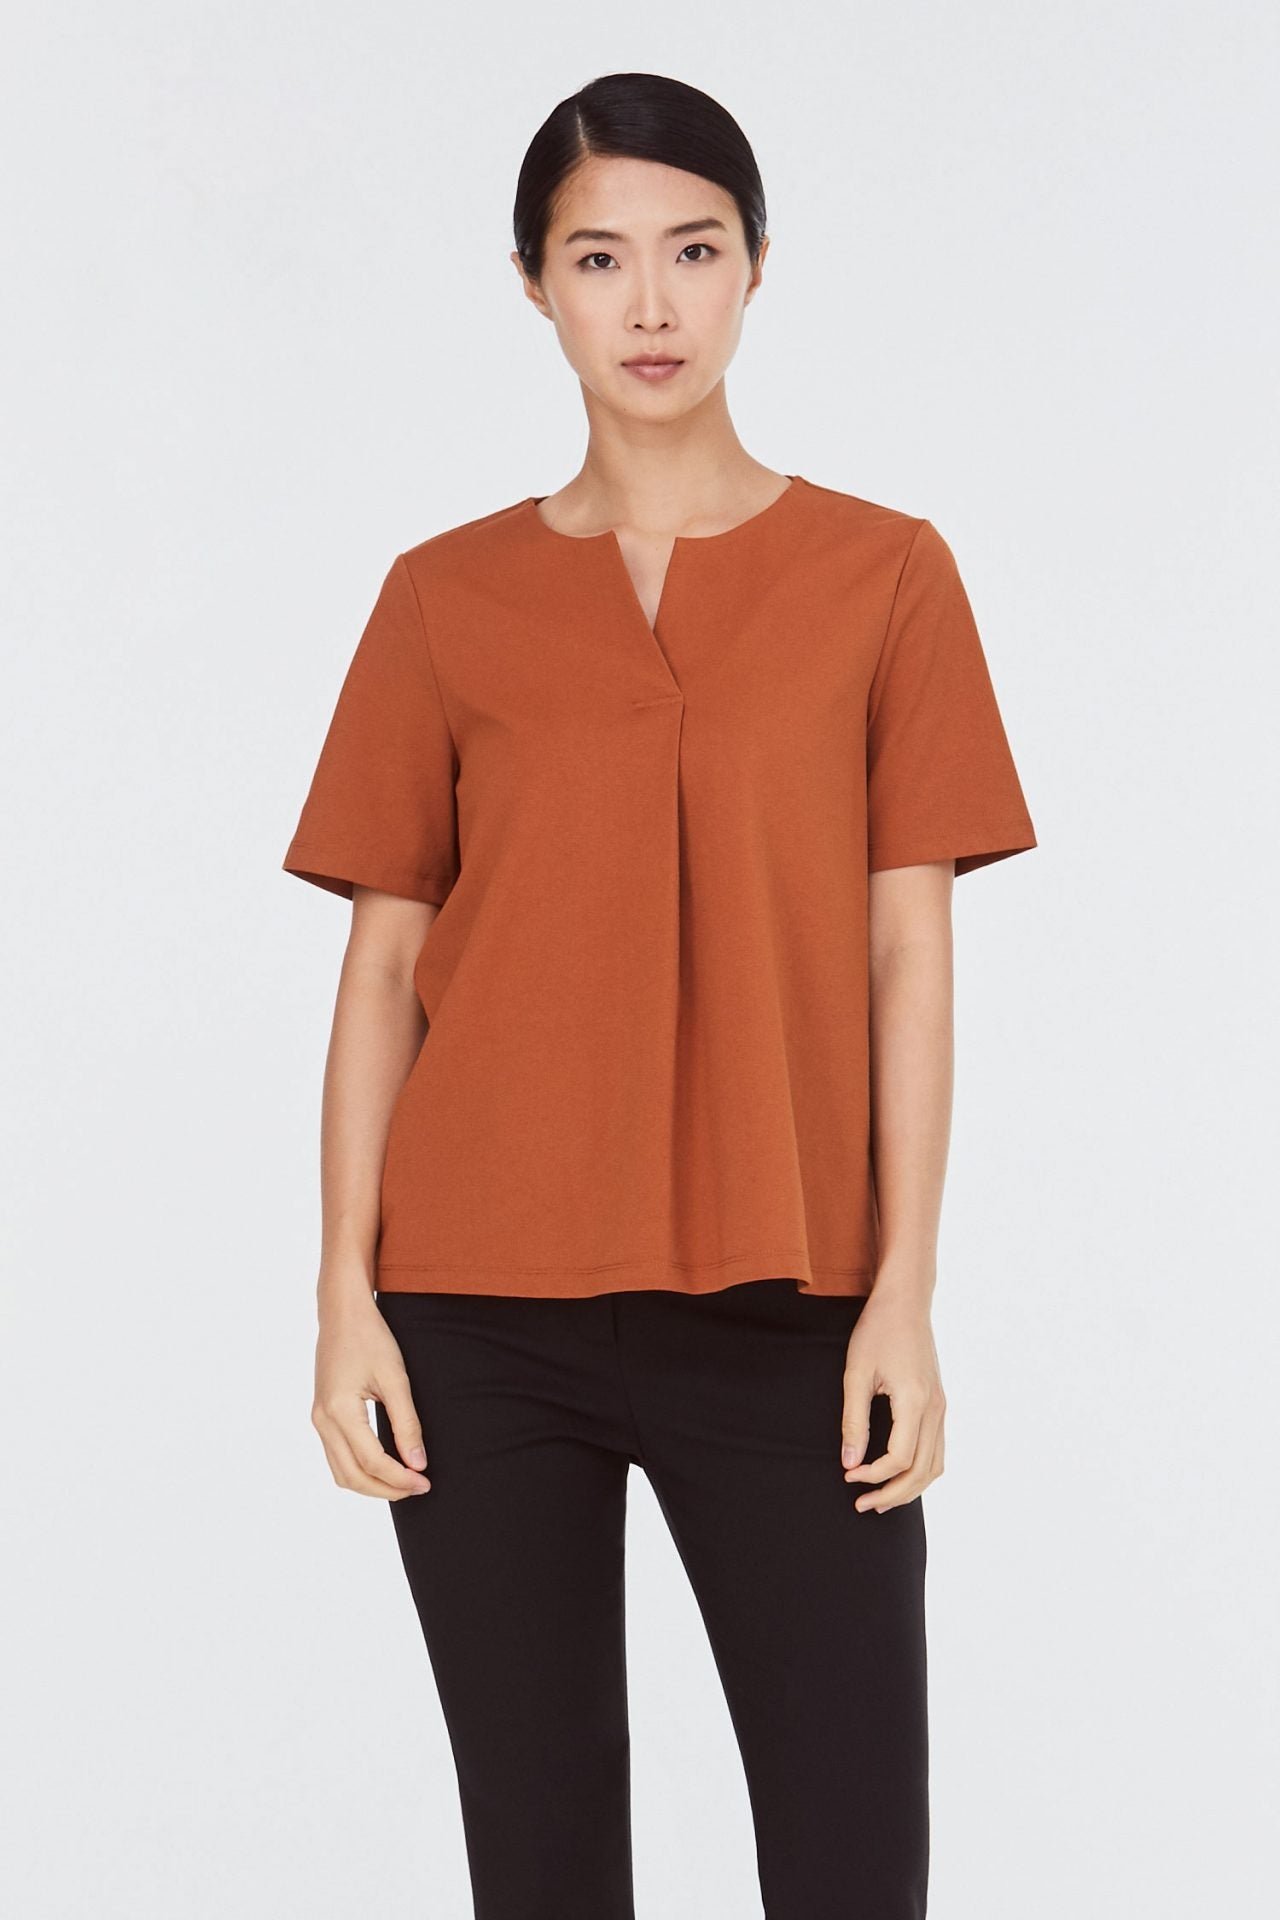 9098 caramel v-slit blouse